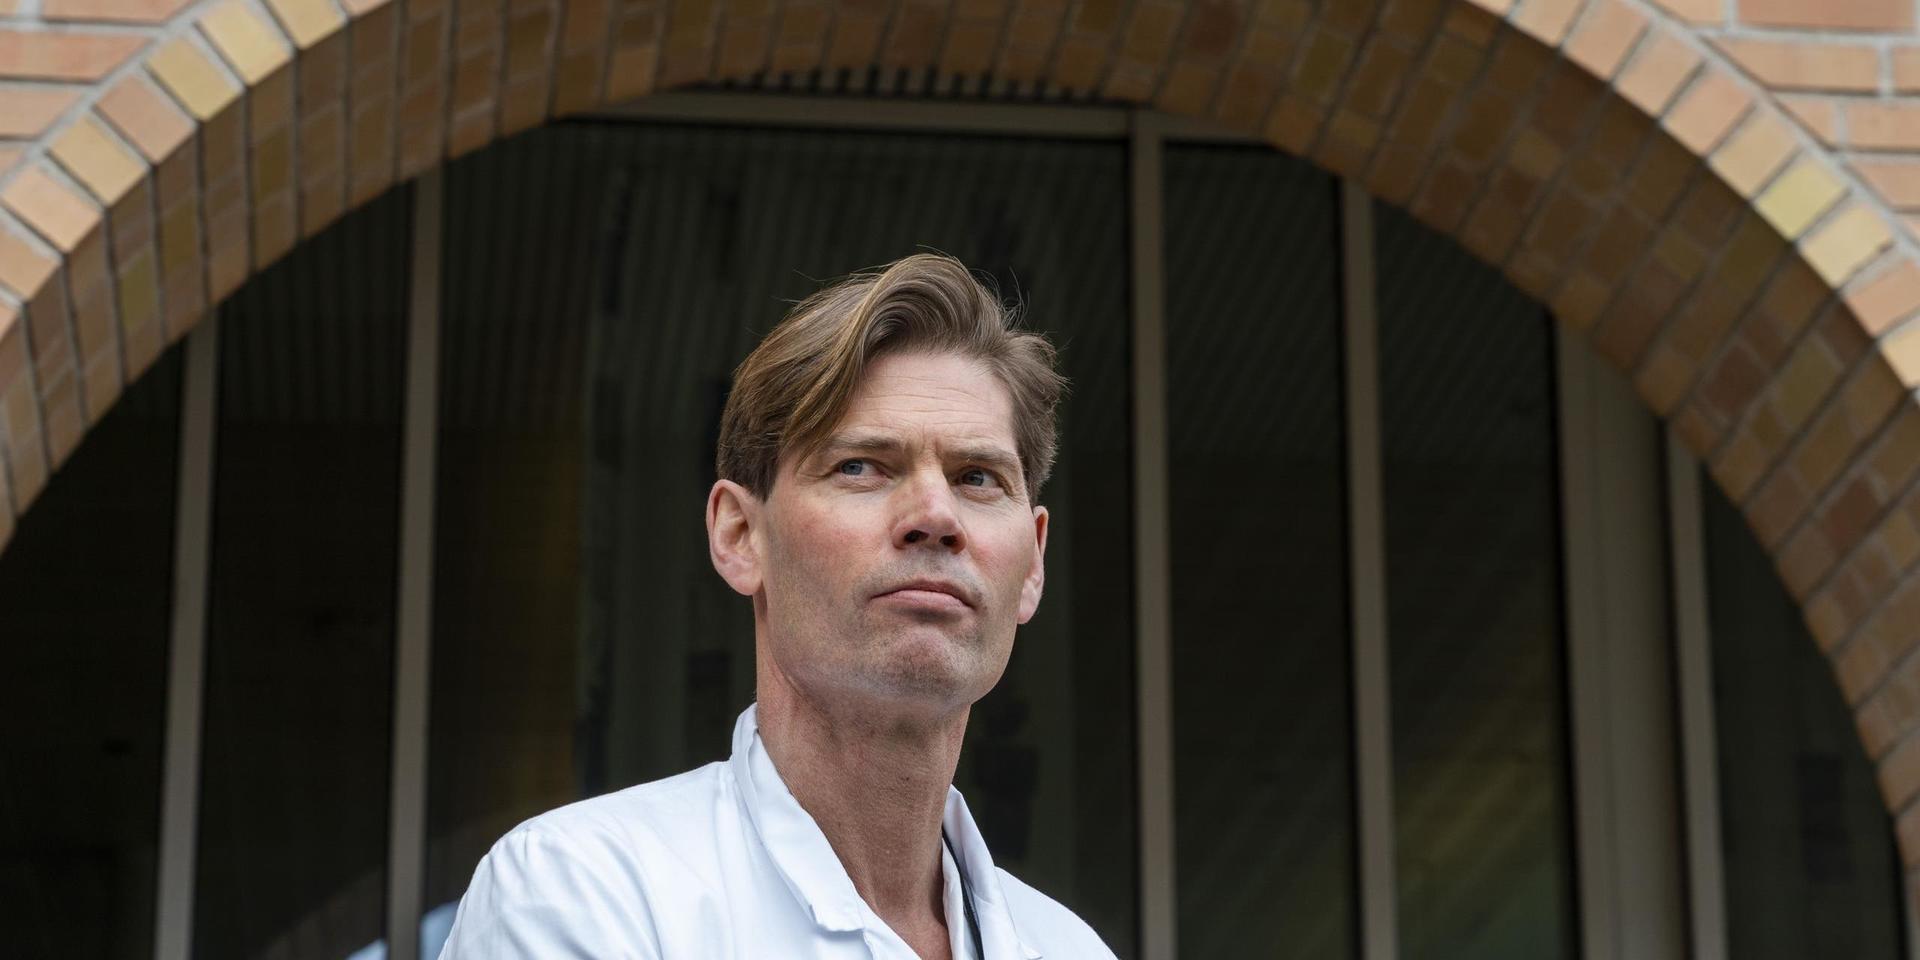 Pål Andre Holme, professor och överläkare vid Oslos universitetssjukhus, håller presskonferens utanför sjukhuset.